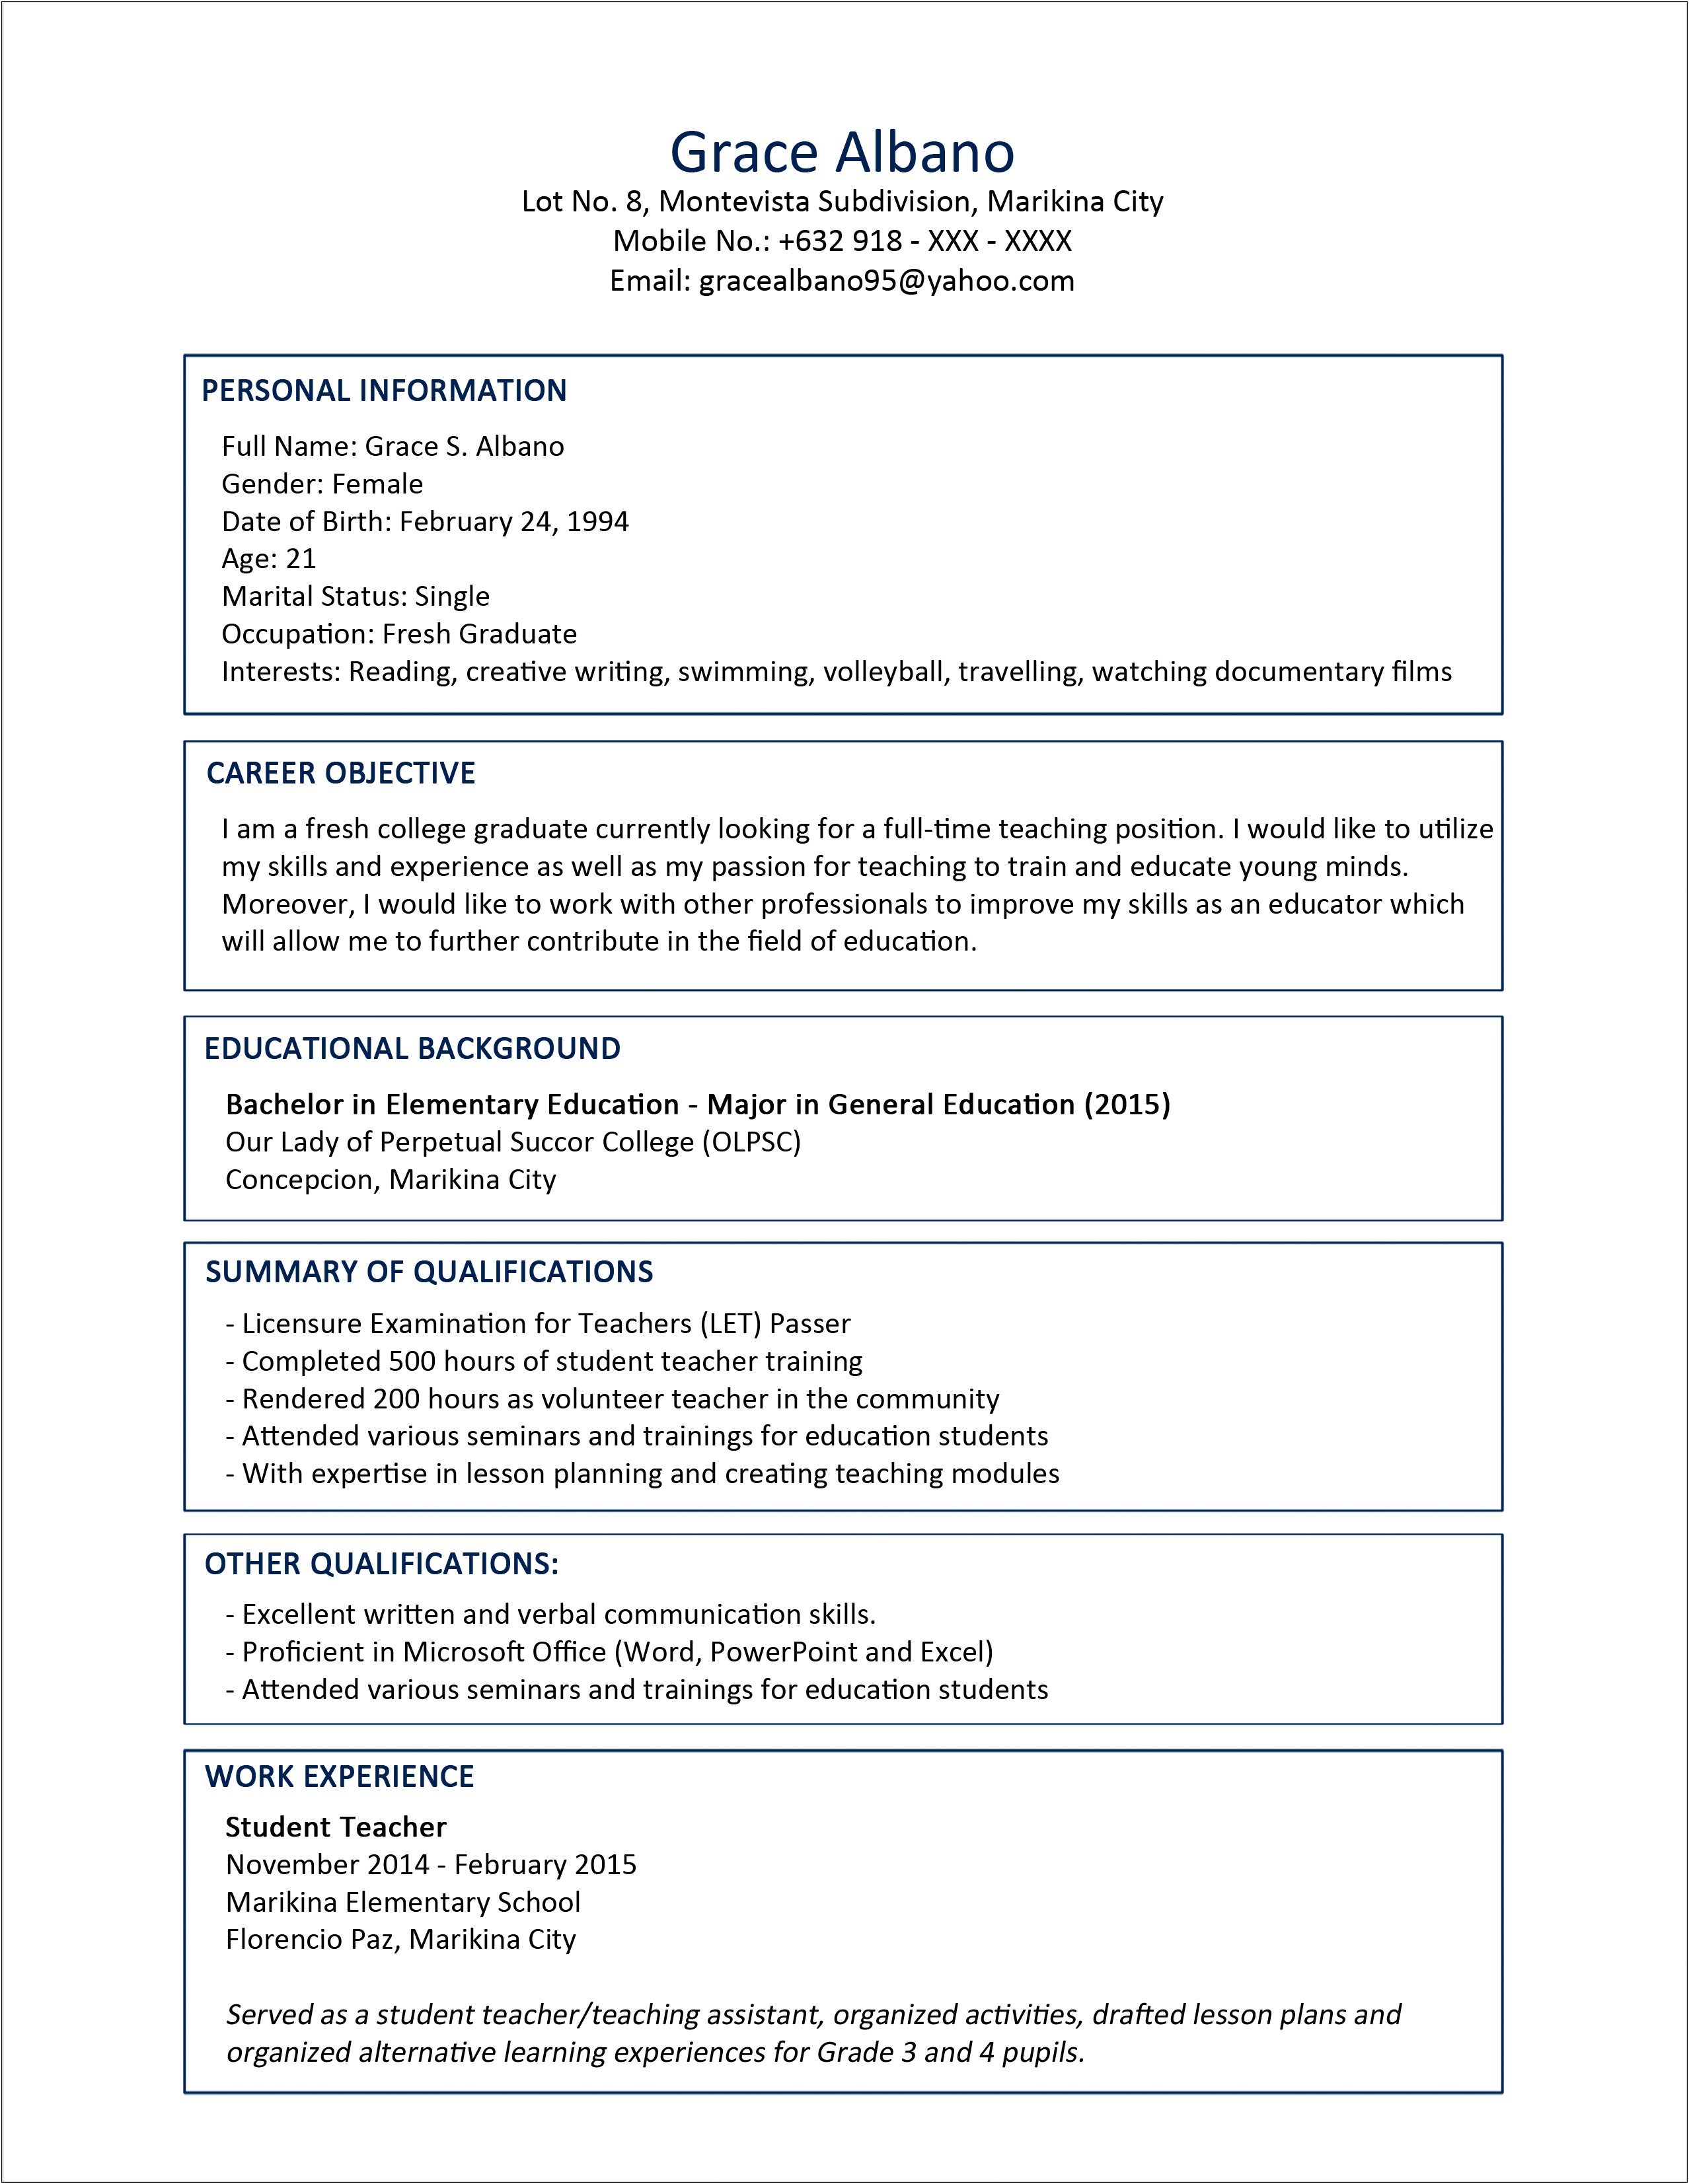 Sample Resume For Elementary Teacher Fresh Graduate